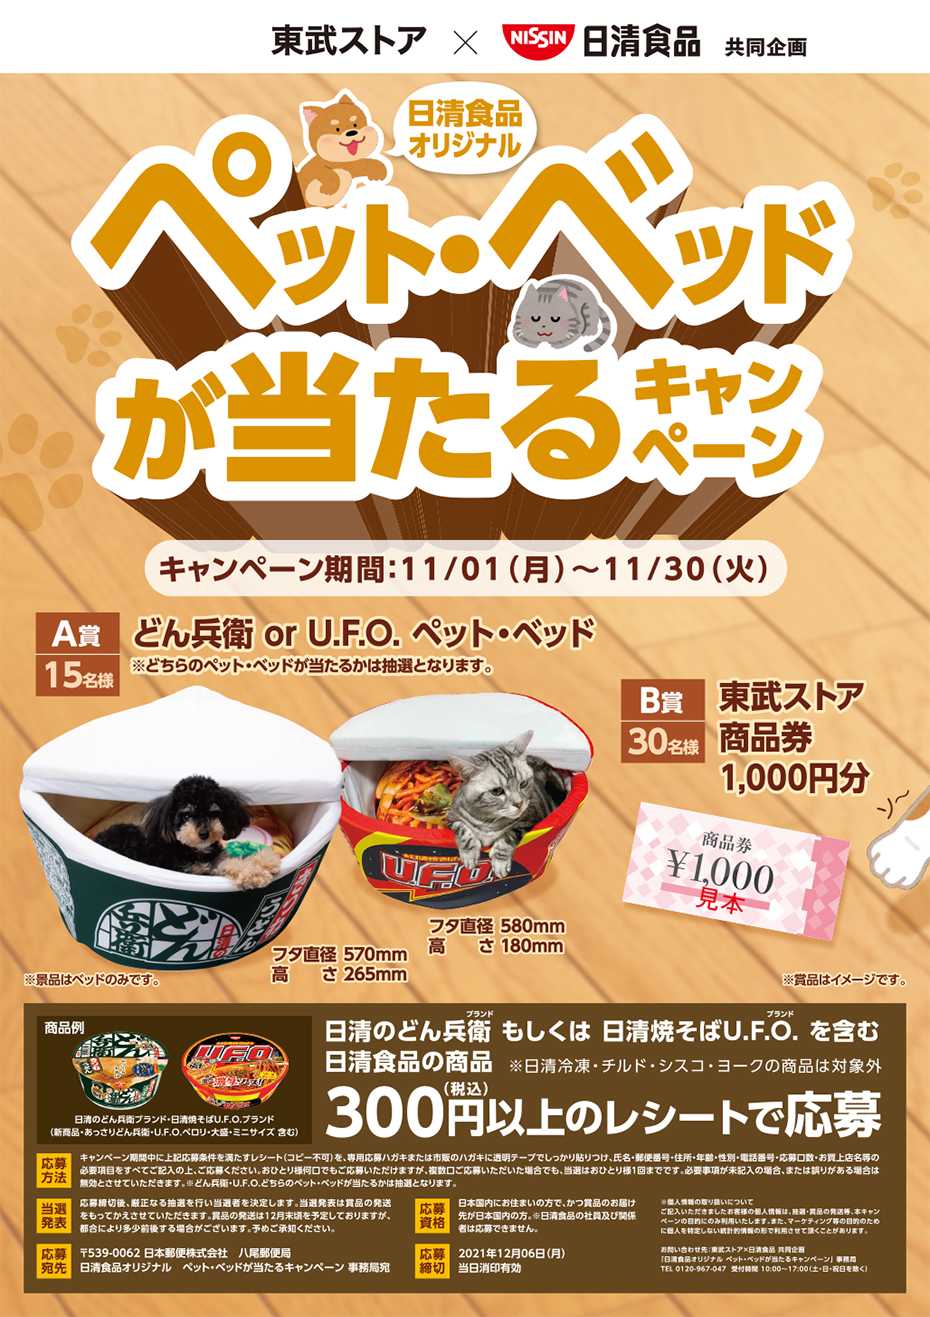 日清食品 ペットベッドキャンペーン 当選報告 | 株主優待♥福袋 - 楽天